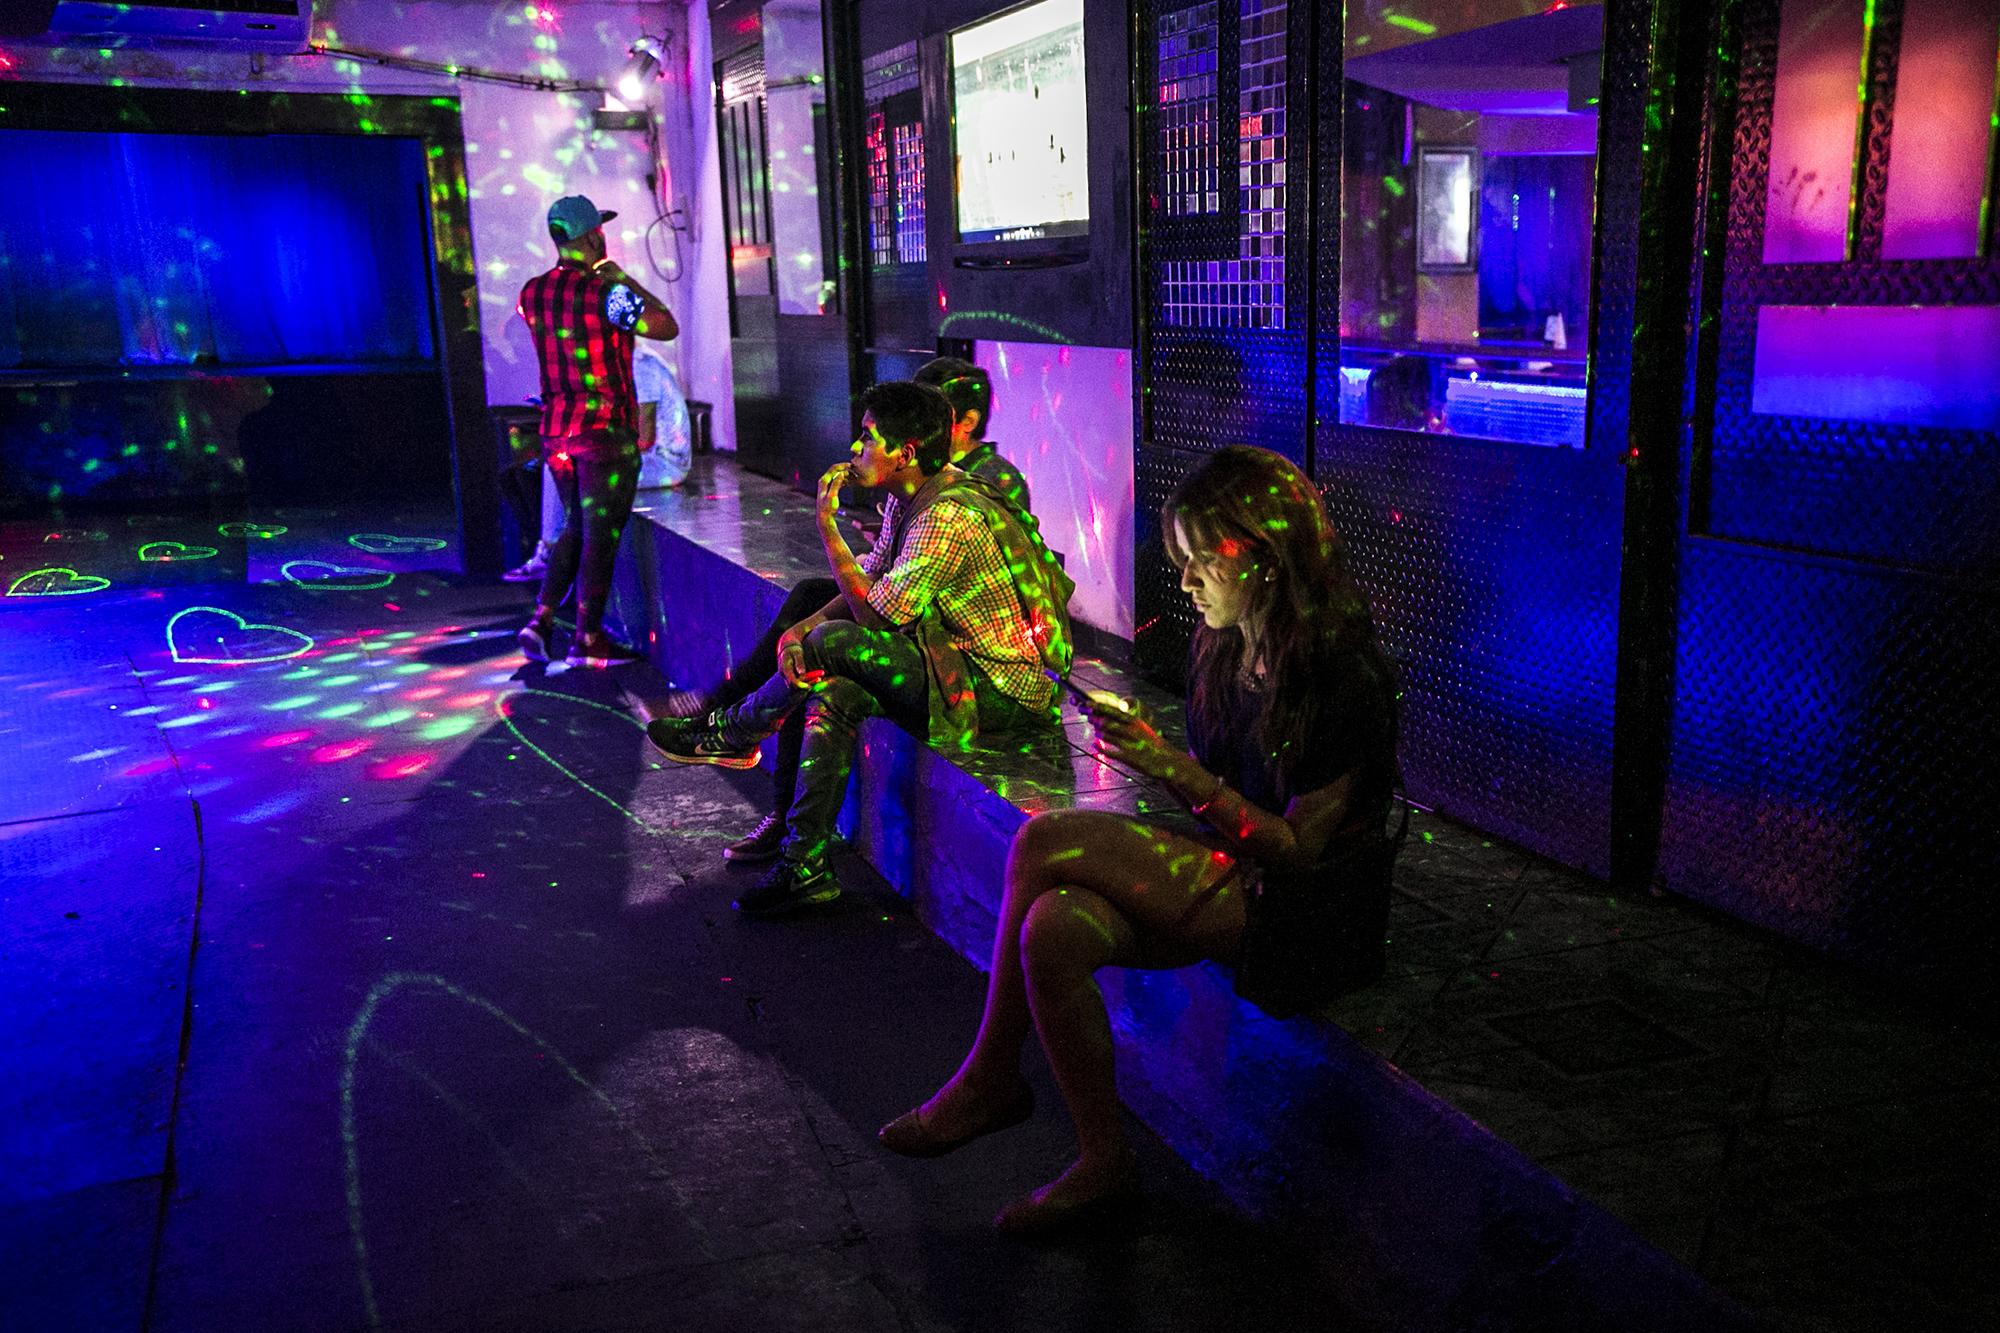 Scape es la única disco de ambiente LGBTI que ha sobrevivido a la posguerra. Entrar a este sótano representa, para muchos, un rito de iniciación. Foto de El Faro, por Fred Ramos.